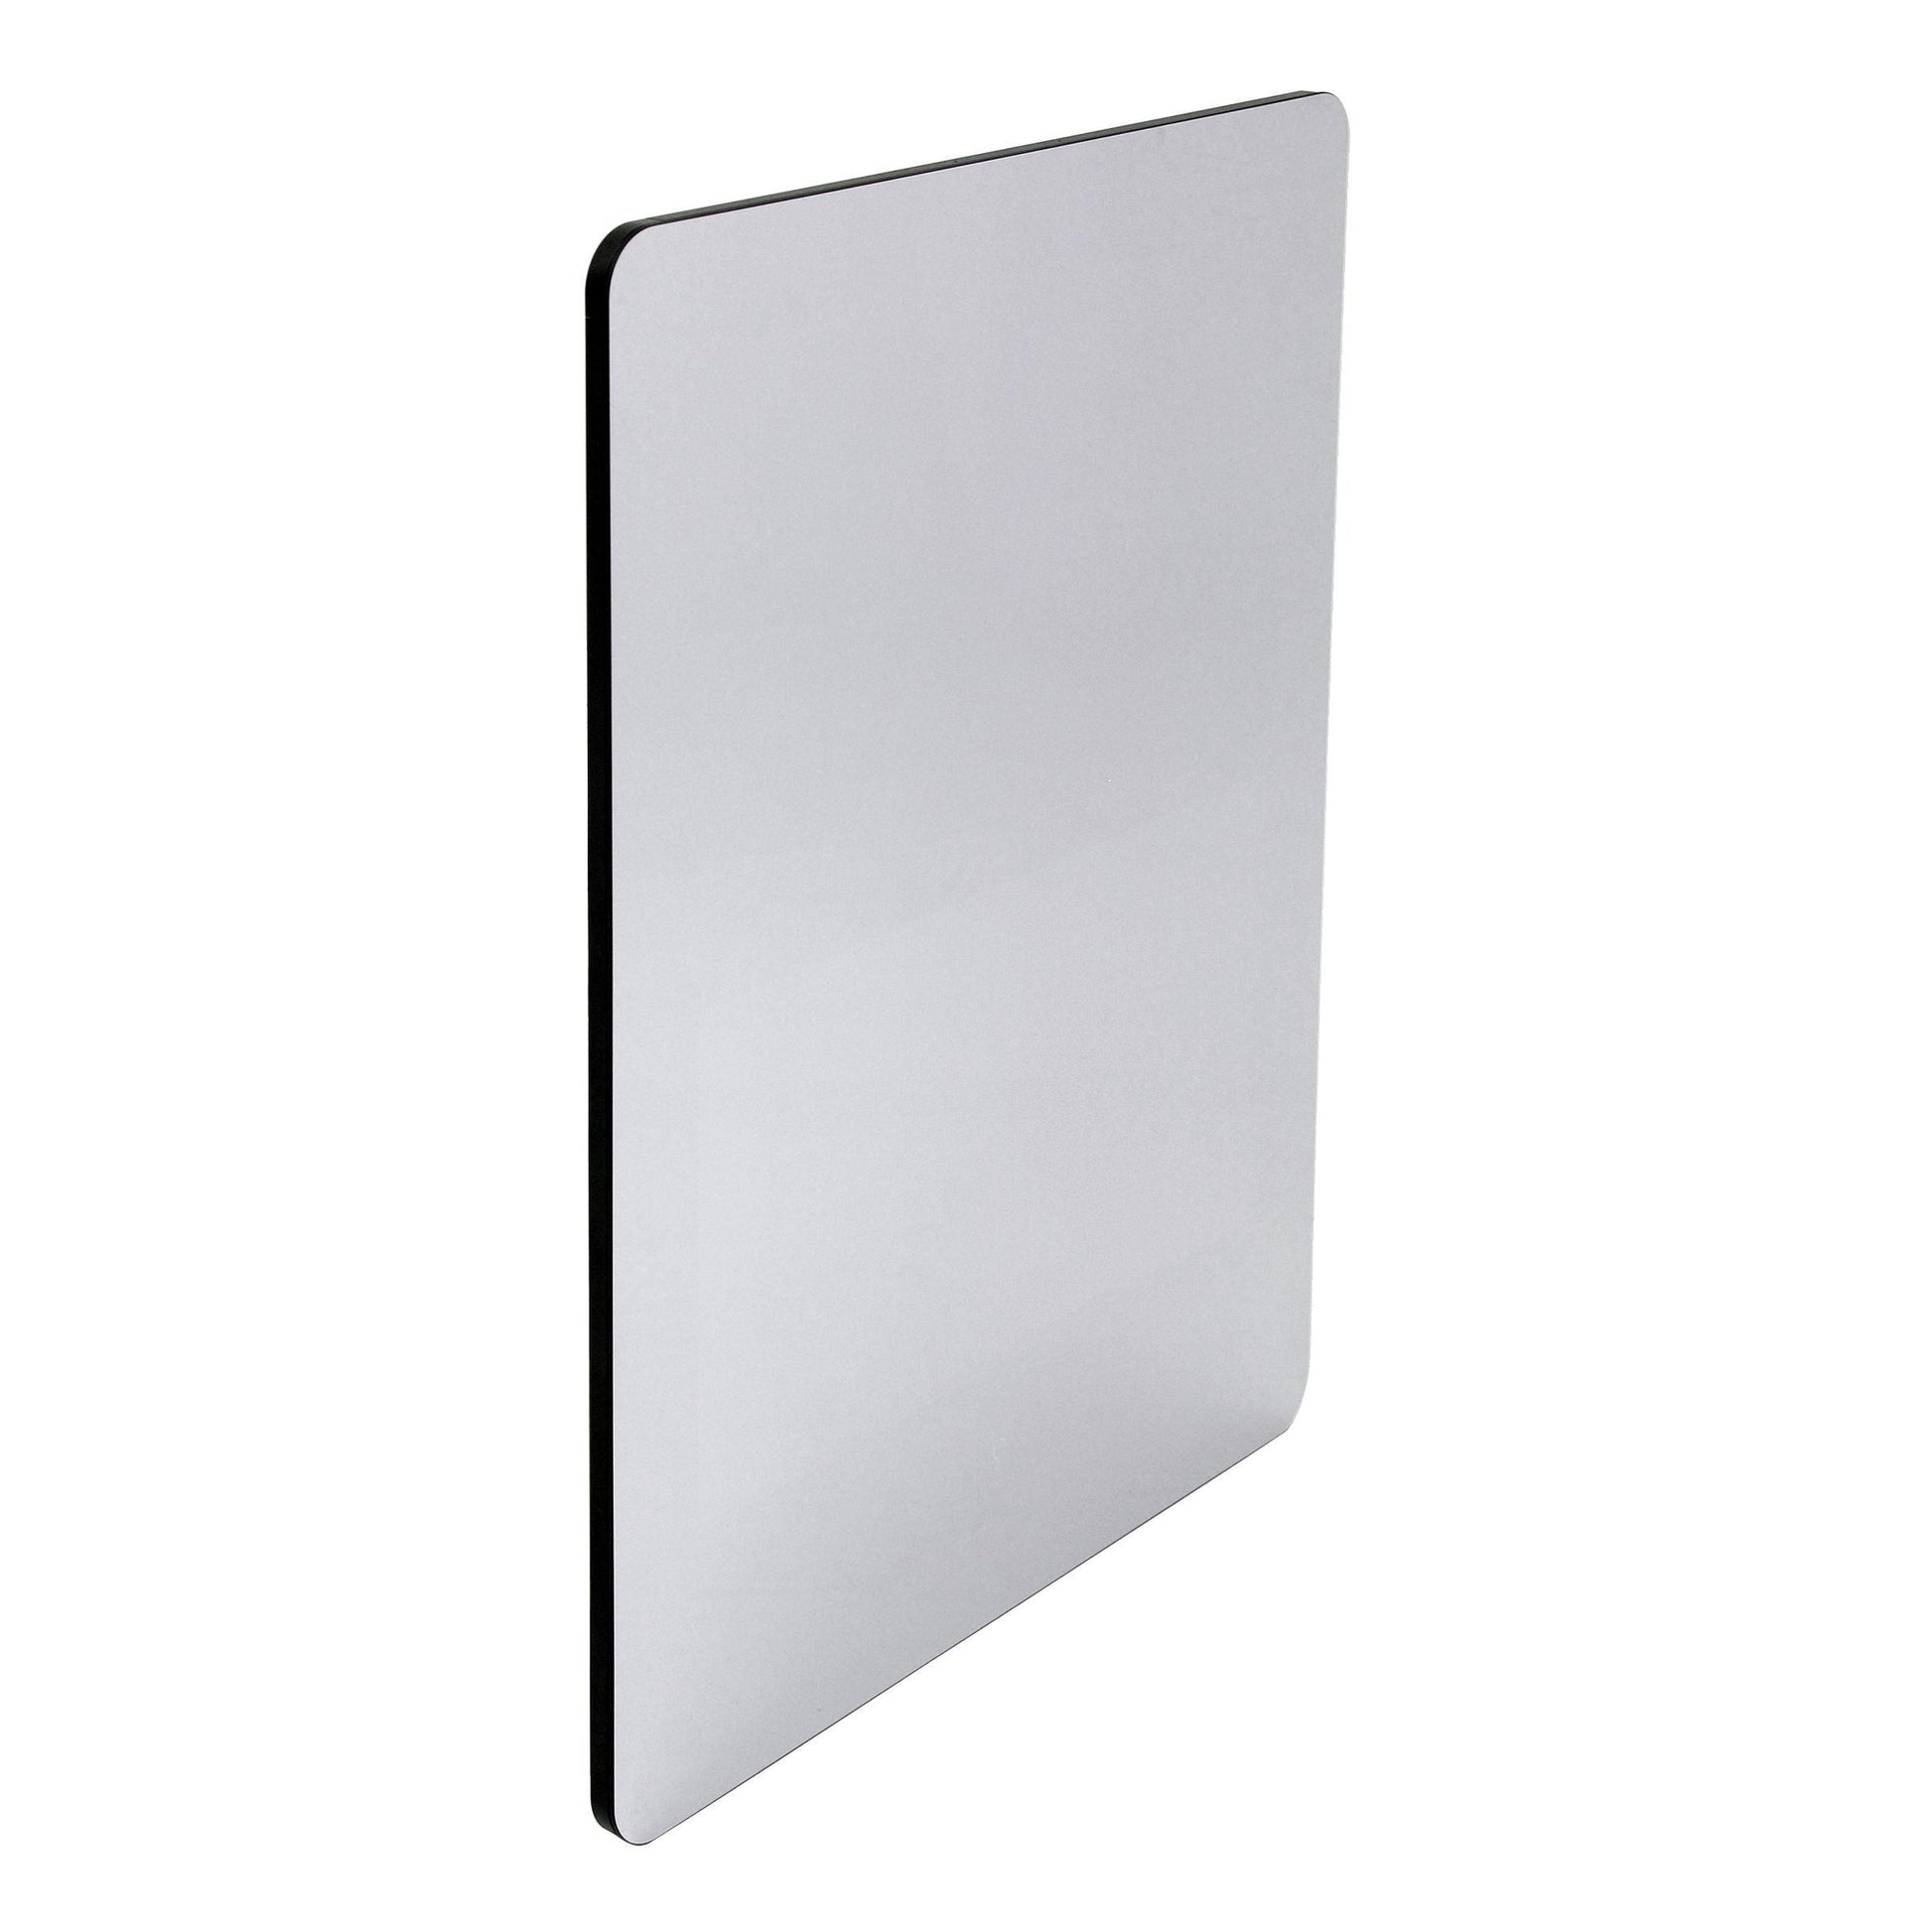 
  
  Hilo XL Smart Mirror 31.5"H x 23.5"W x 1.4"D
  
